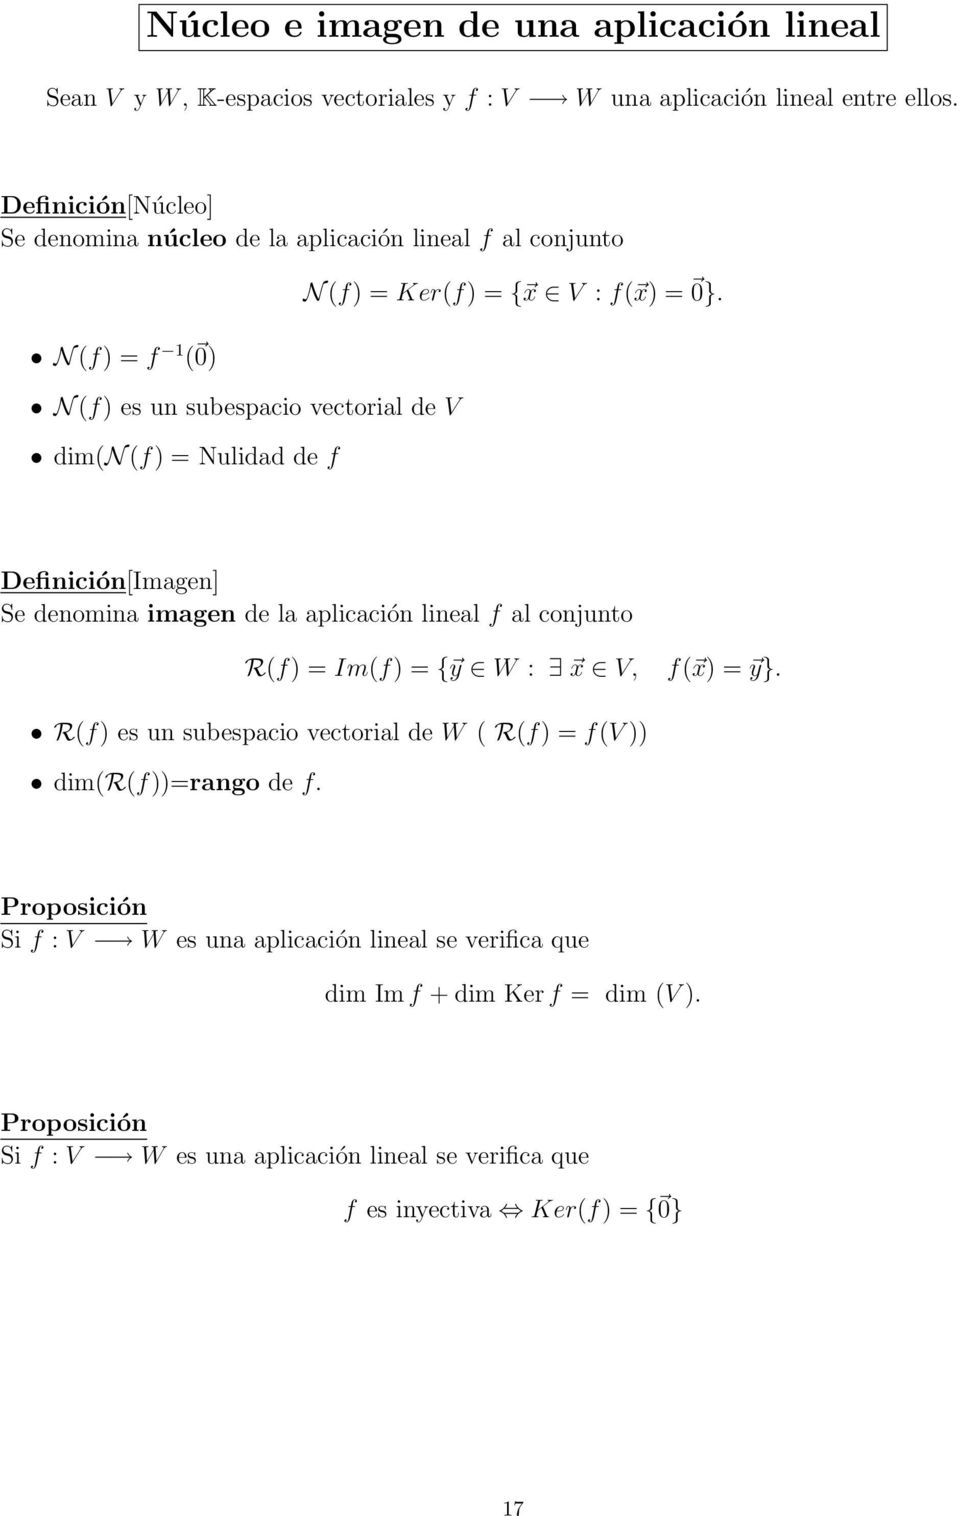 x V : f( x) = 0}. Definición[Imagen] Se denomina imagen de la aplicación lineal f al conjunto R(f) = Im(f) = { y W : x V, f( x) = y}.